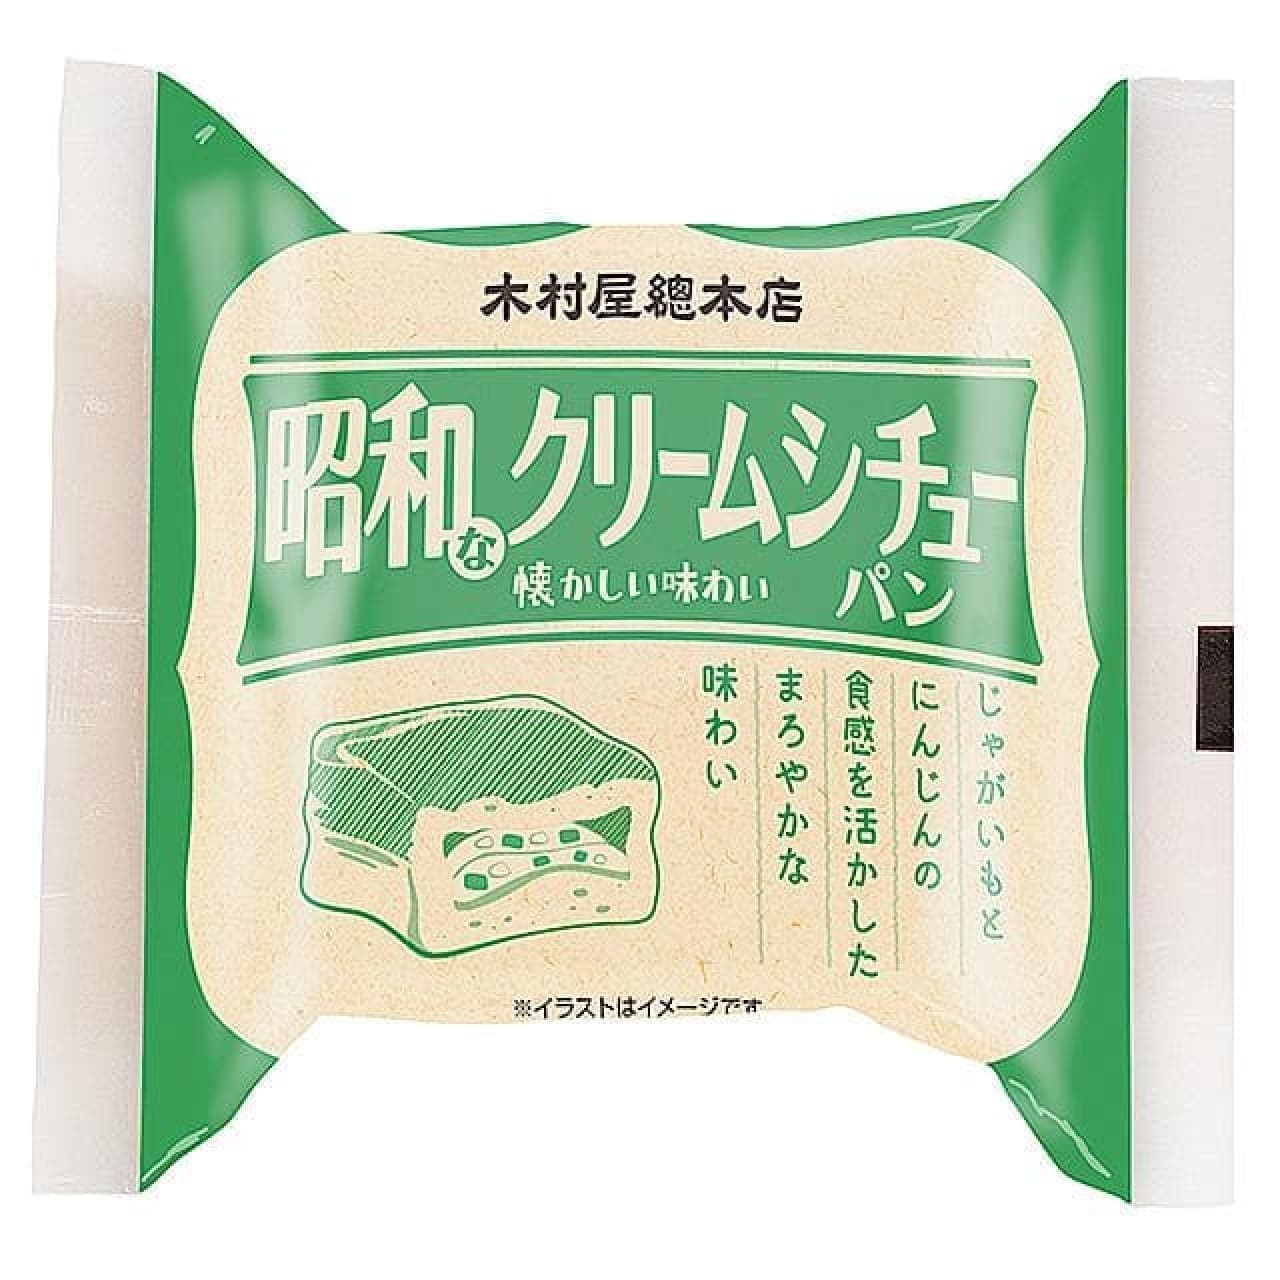 「昭和なクリームシチューパン」商品画像